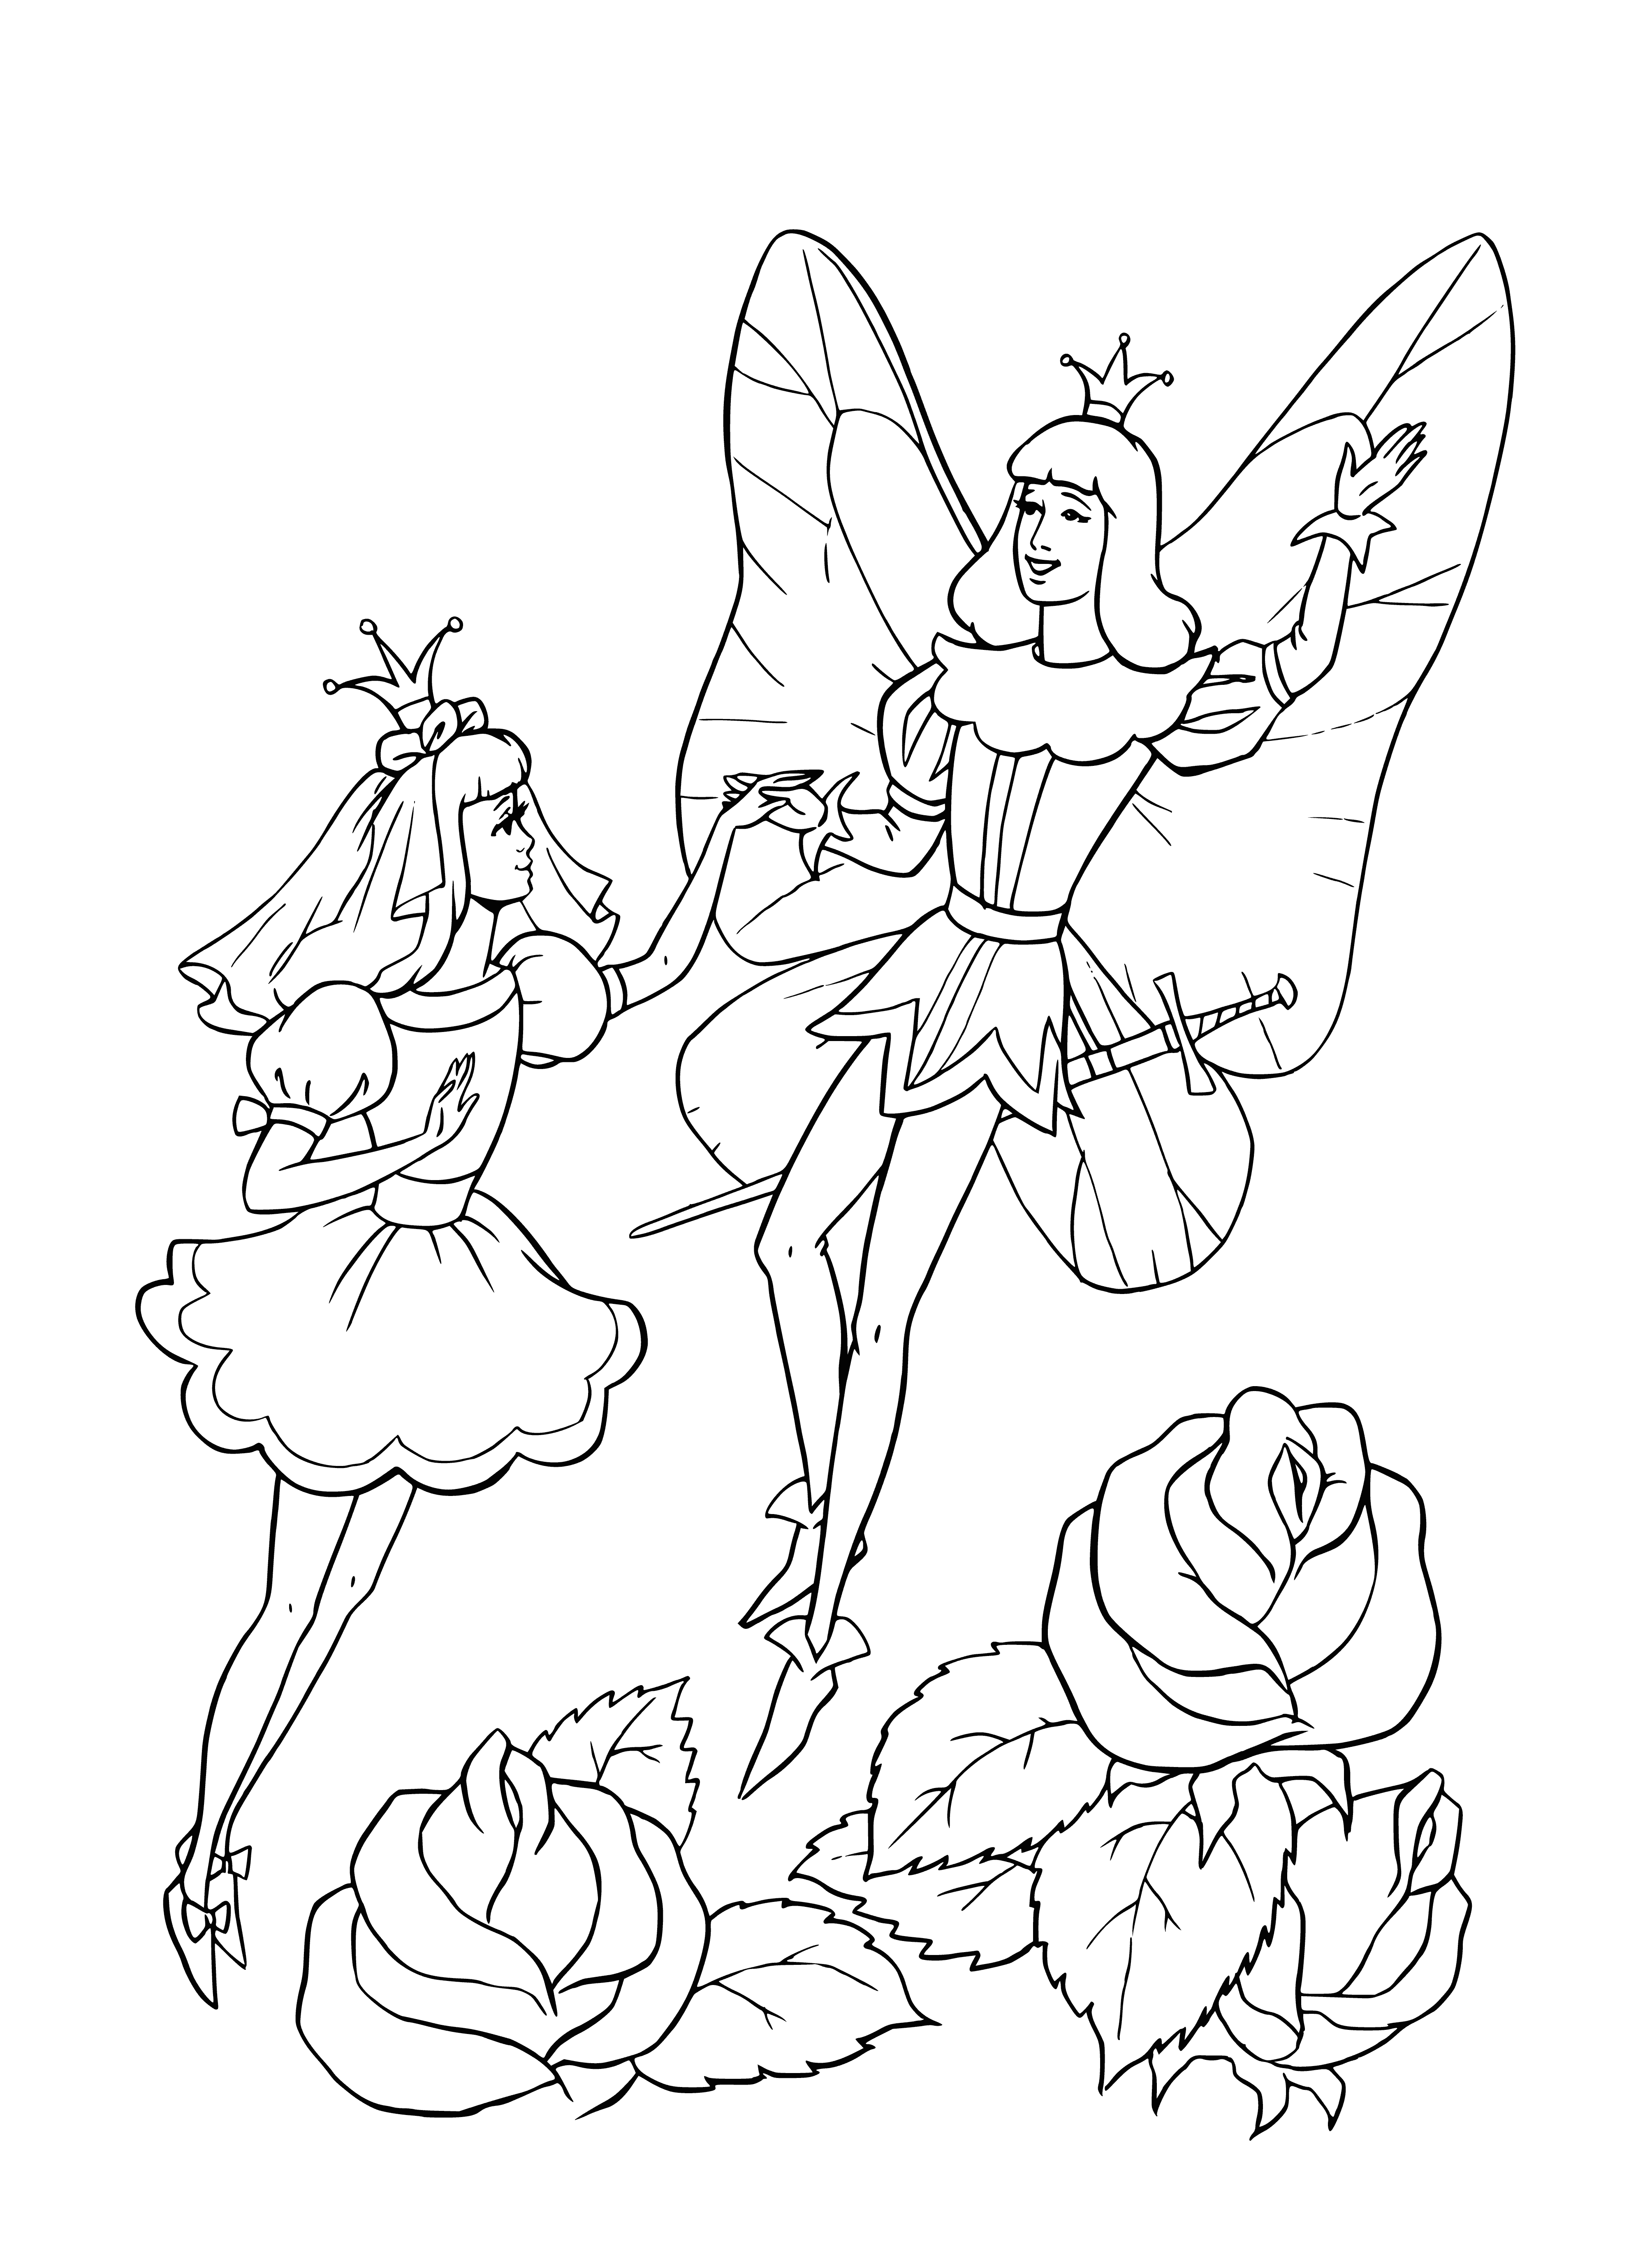 Thumbelina ve elflerin kralı boyama sayfası